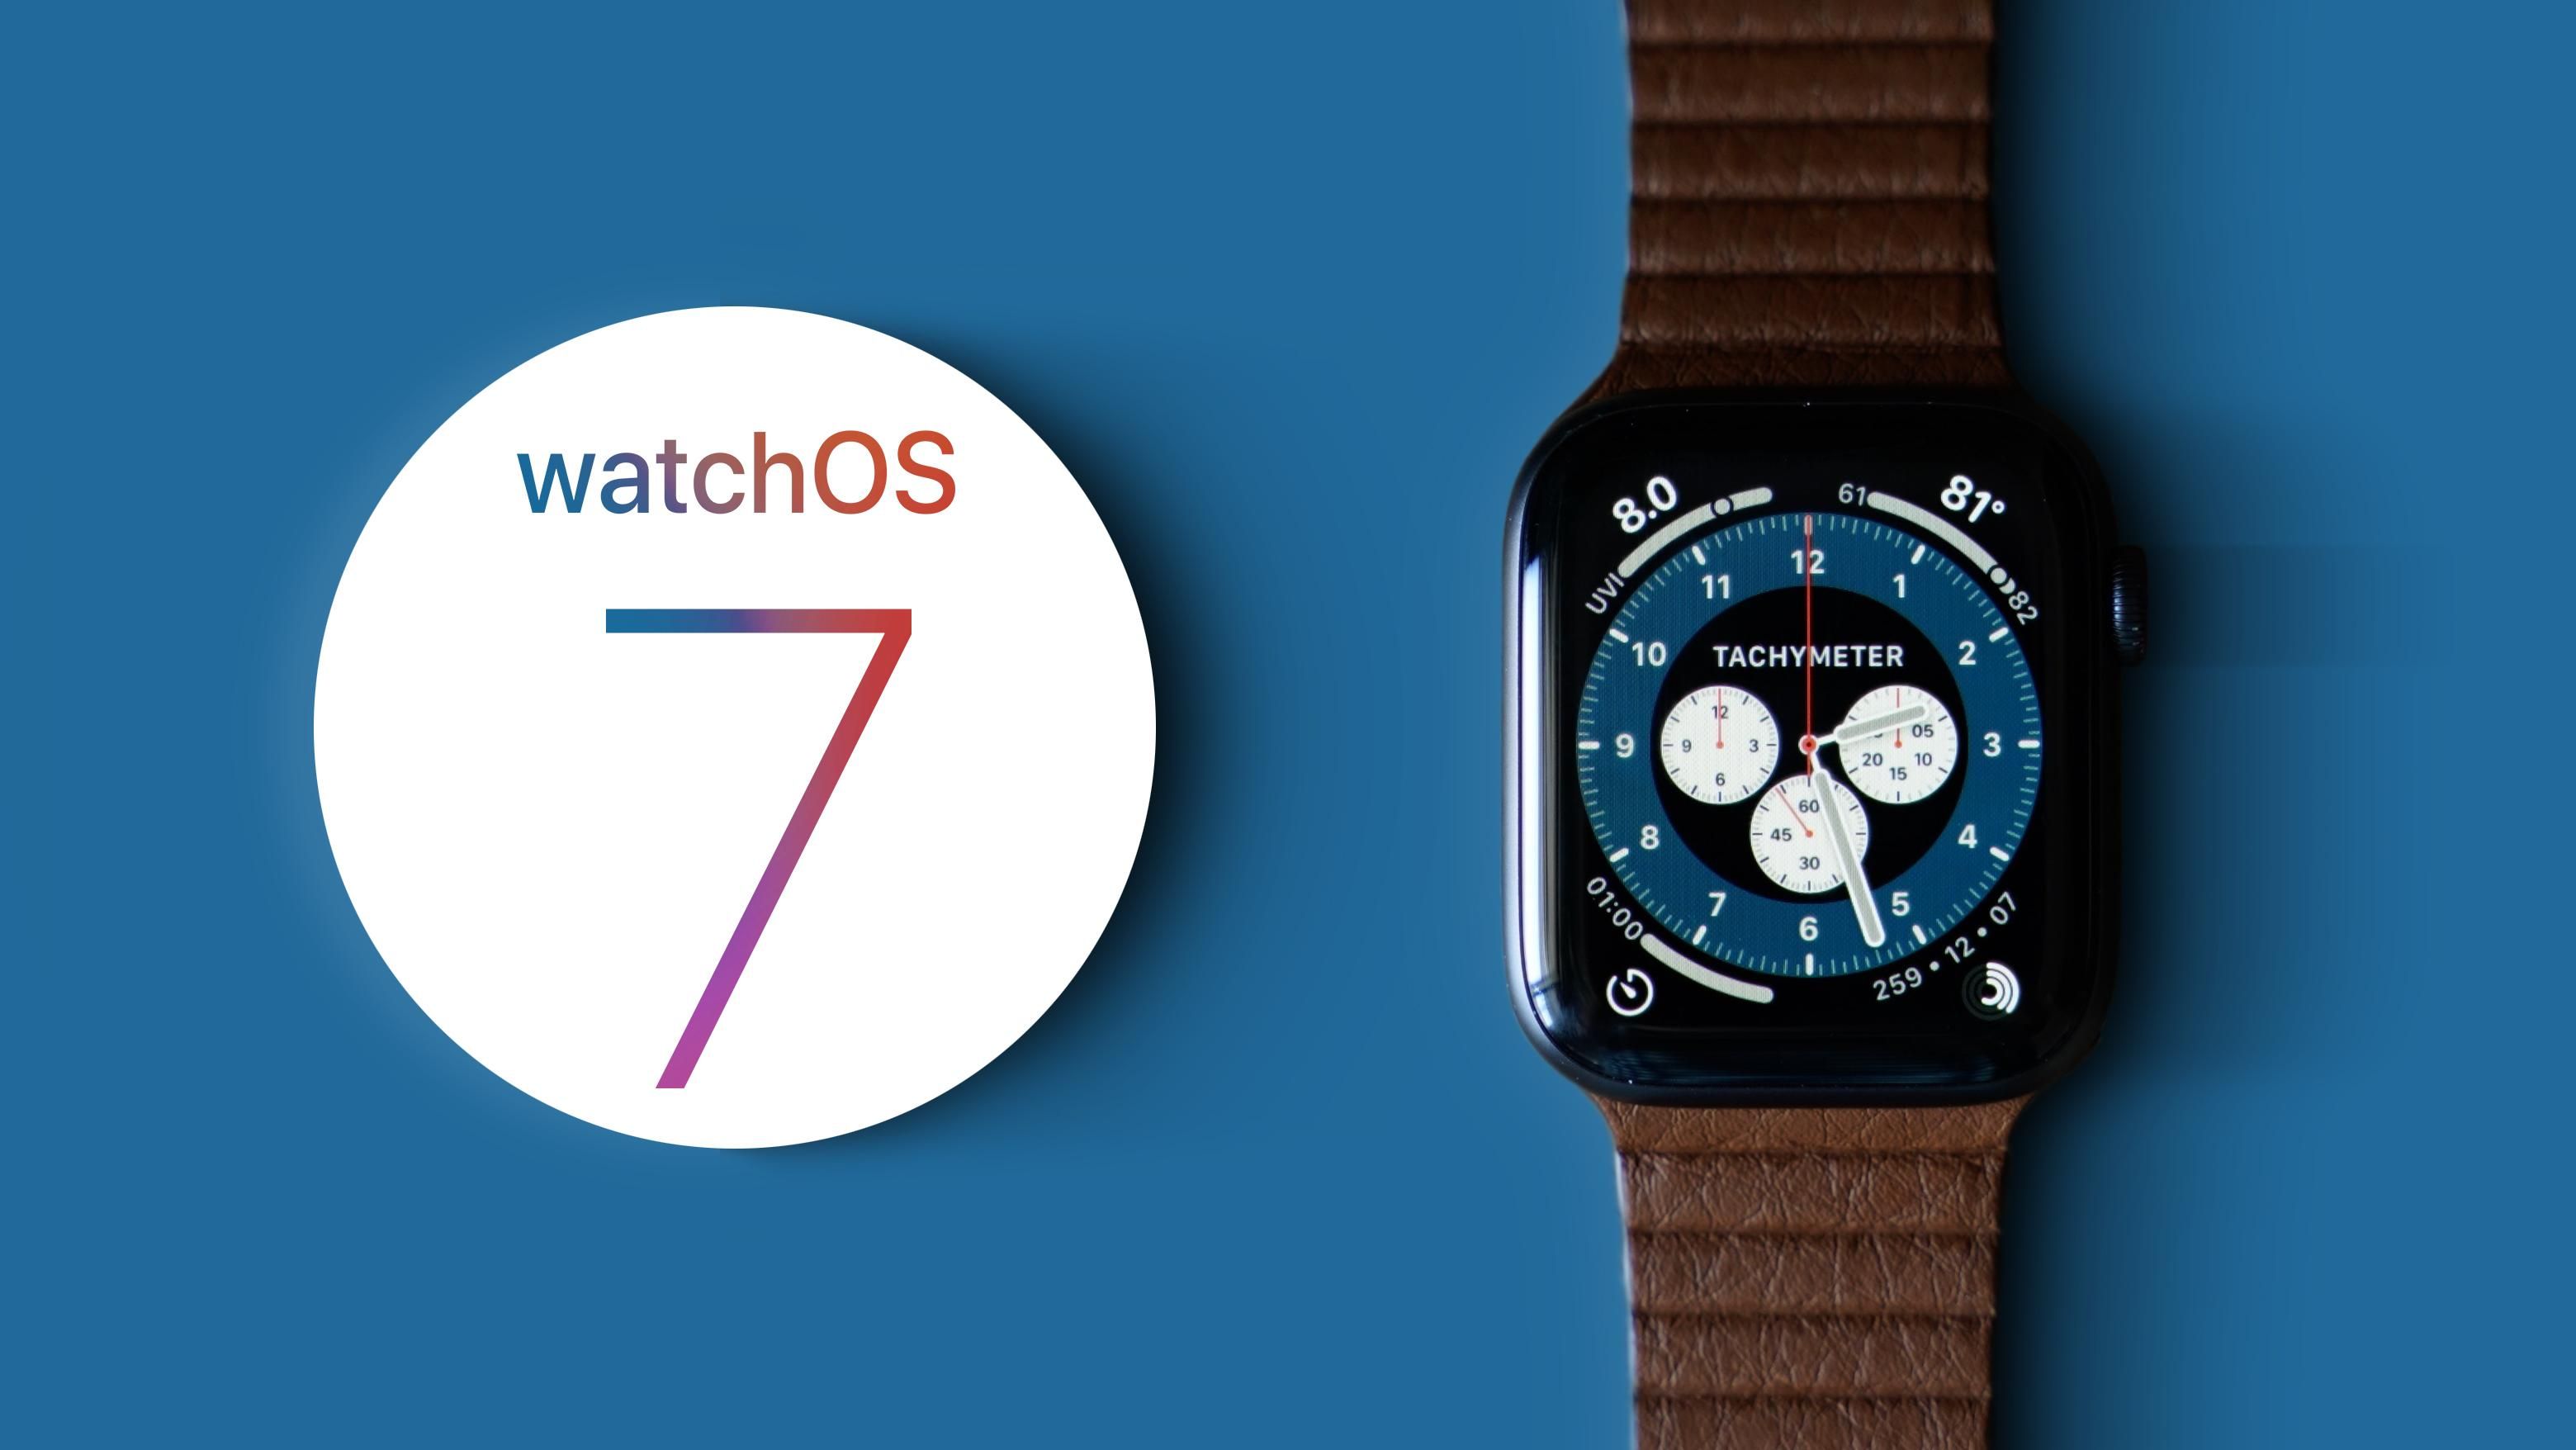 iPadOS 14:перечень iPad; watchOS 7: список Apple Watch - новости Apple